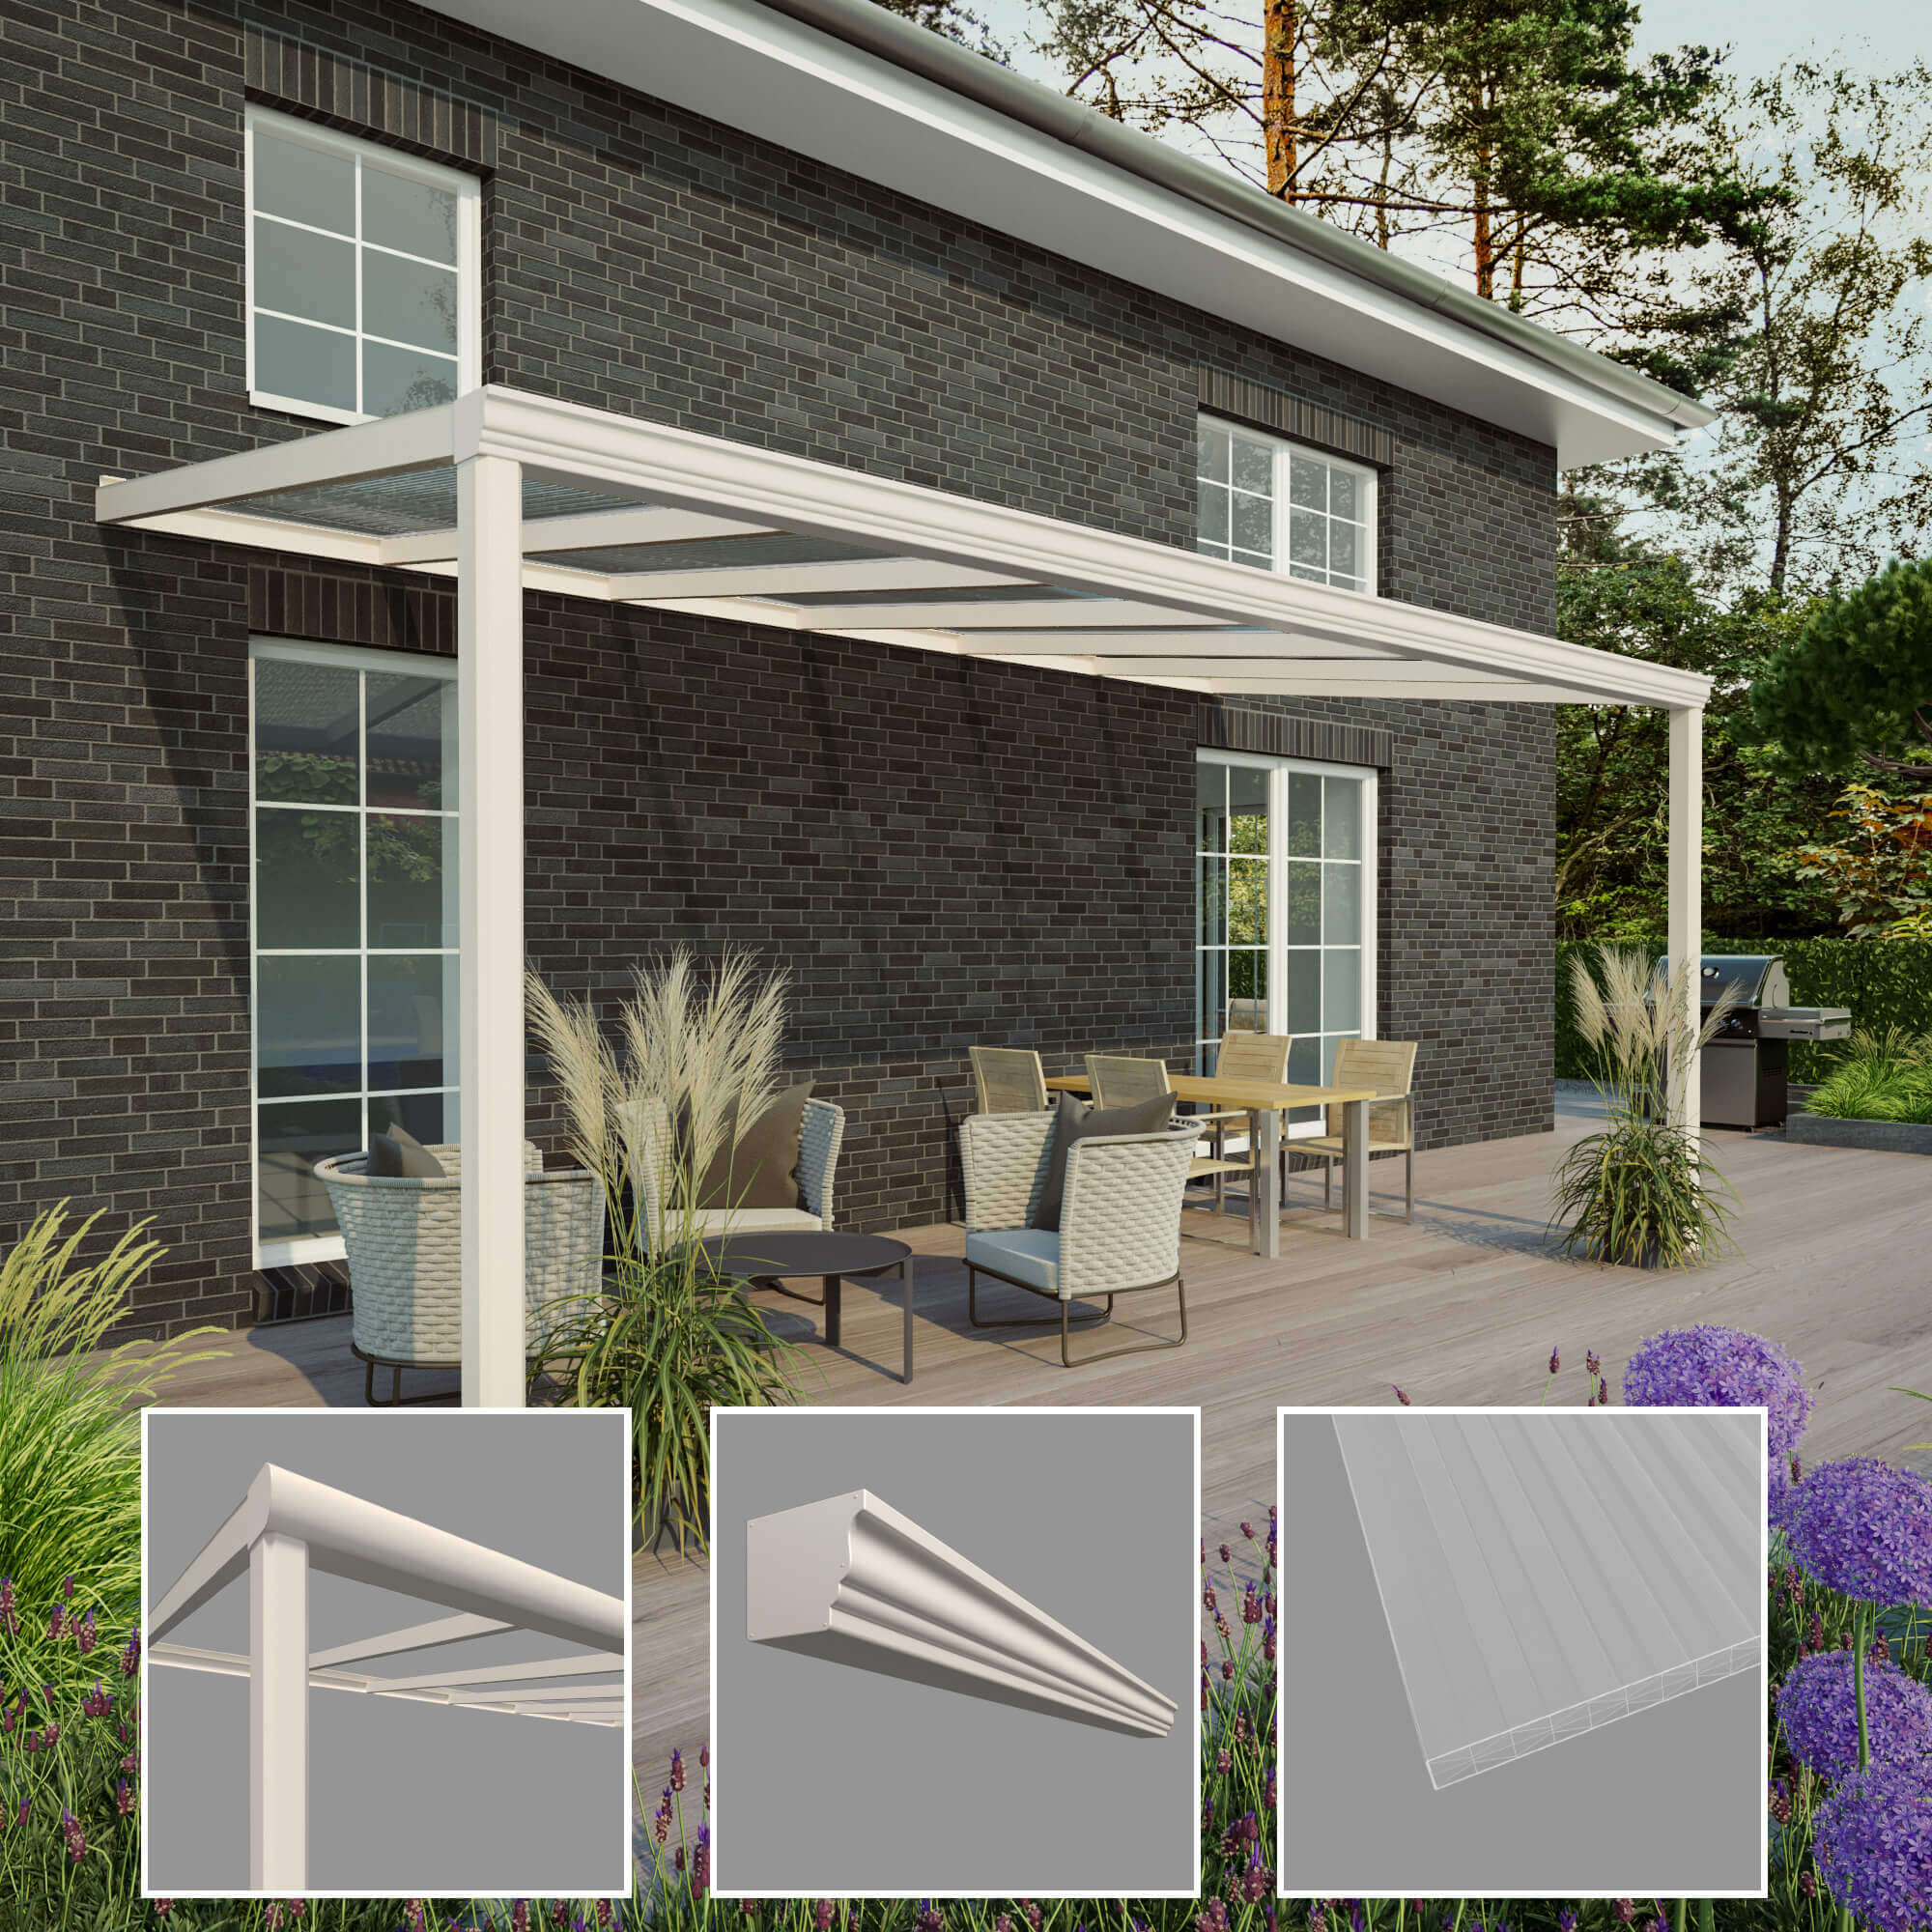 Moderne terrasoverkapping in wit met gedetailleerde weergaven van aanpassingsopties zoals dakhelling en regengoten